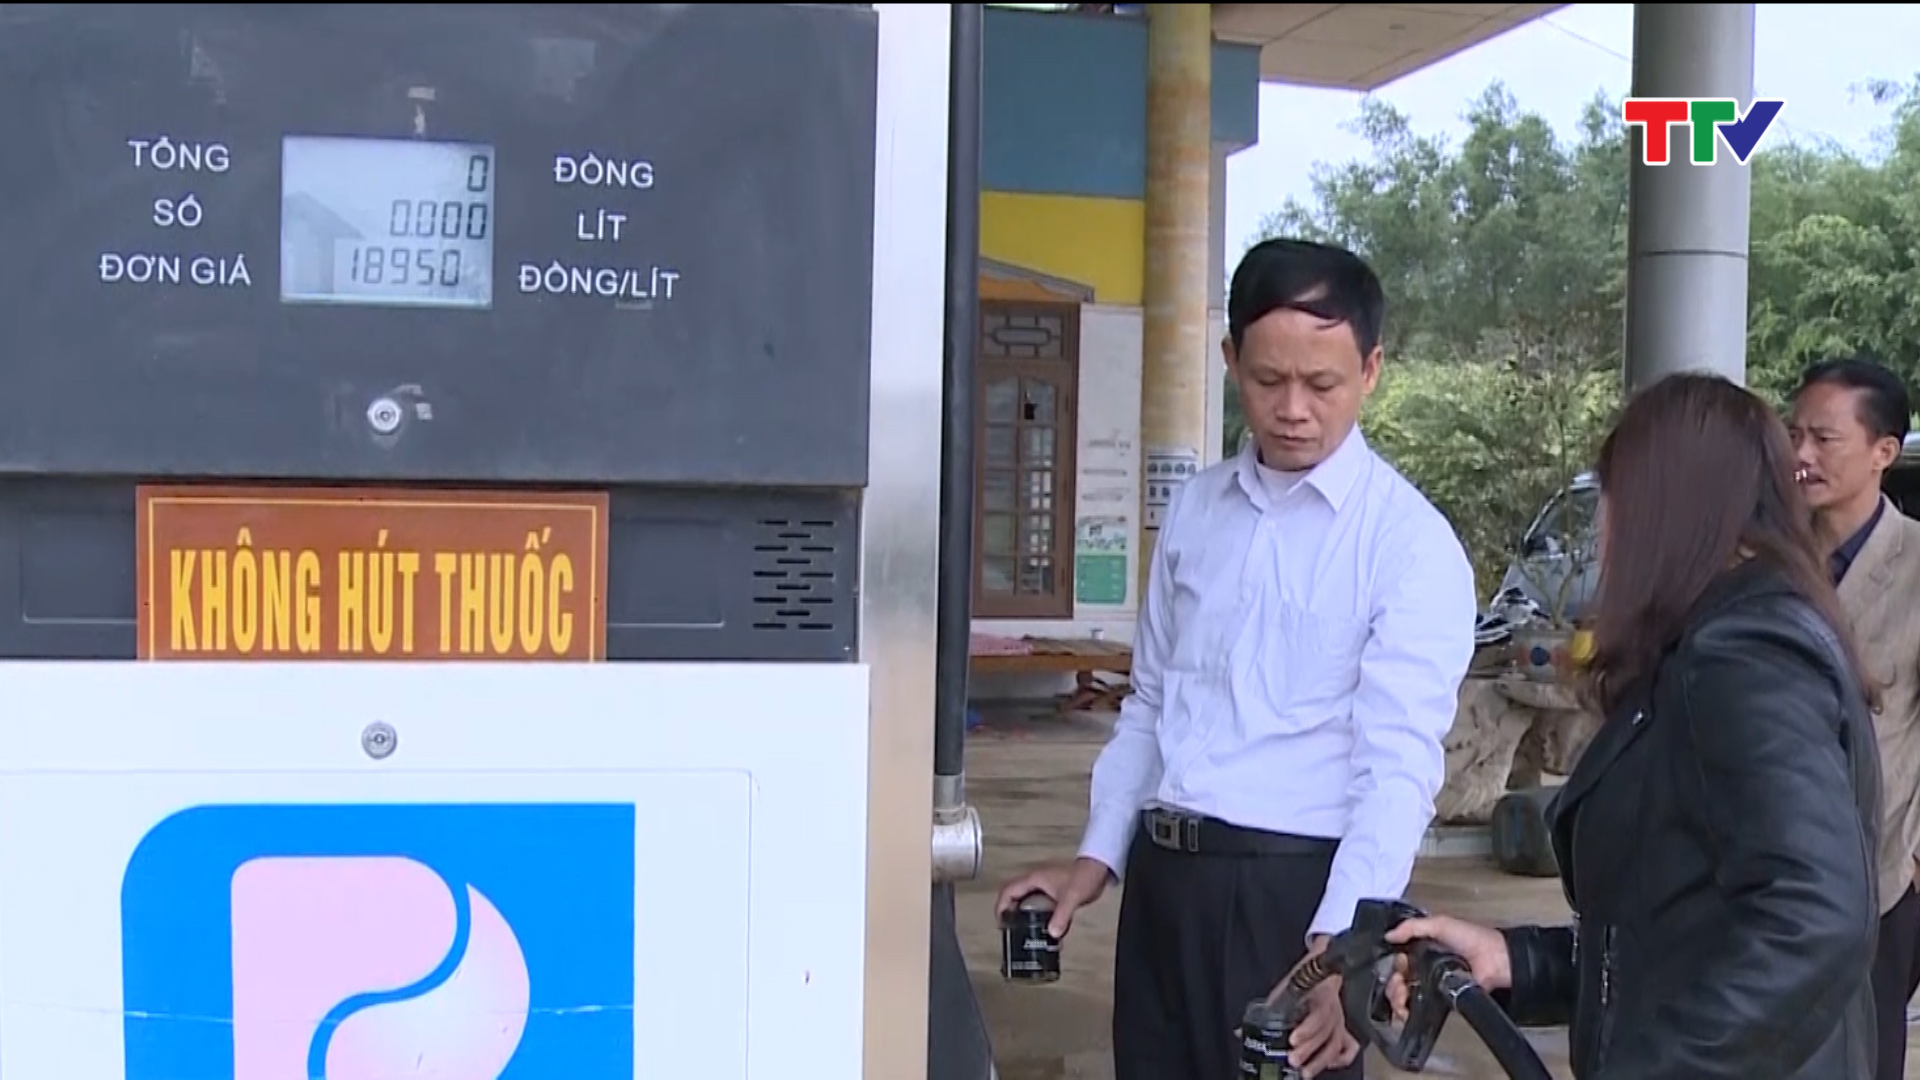 Đoàn kiểm tra liên ngành tỉnh Thanh Hóa đã xử phạt 63 cơ sở kinh doanh xăng dầu vi phạm quy định